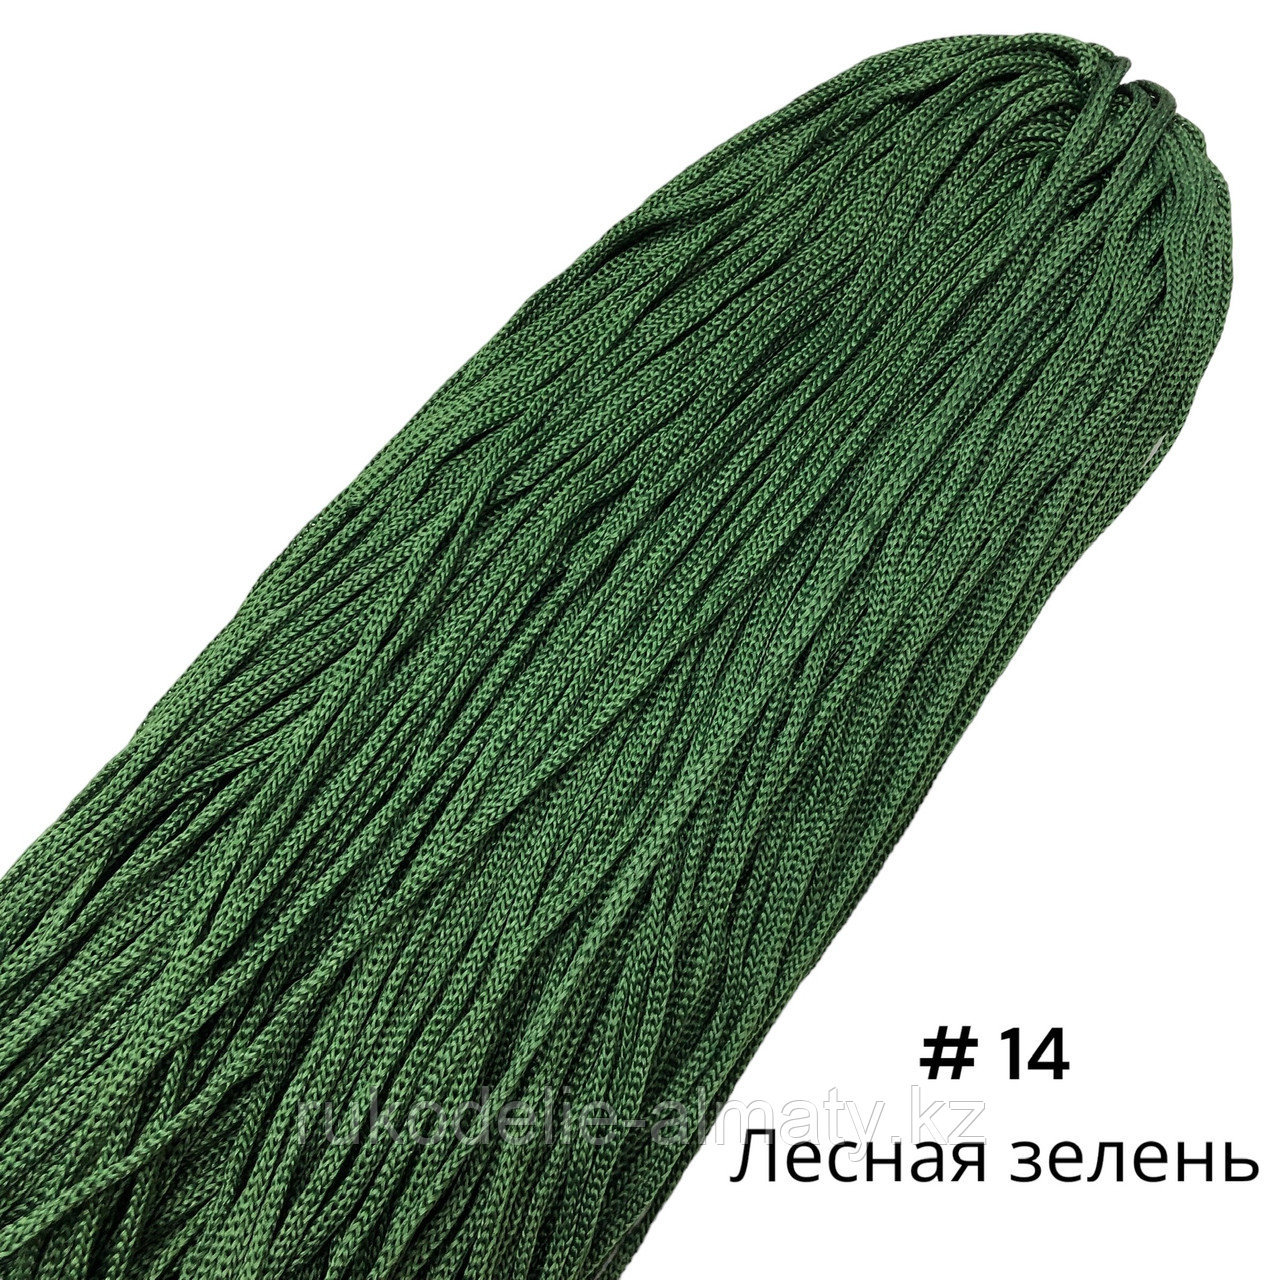 Полиэфирный шнур без сердечника, 3мм, пасма ⠀ лесная зелень